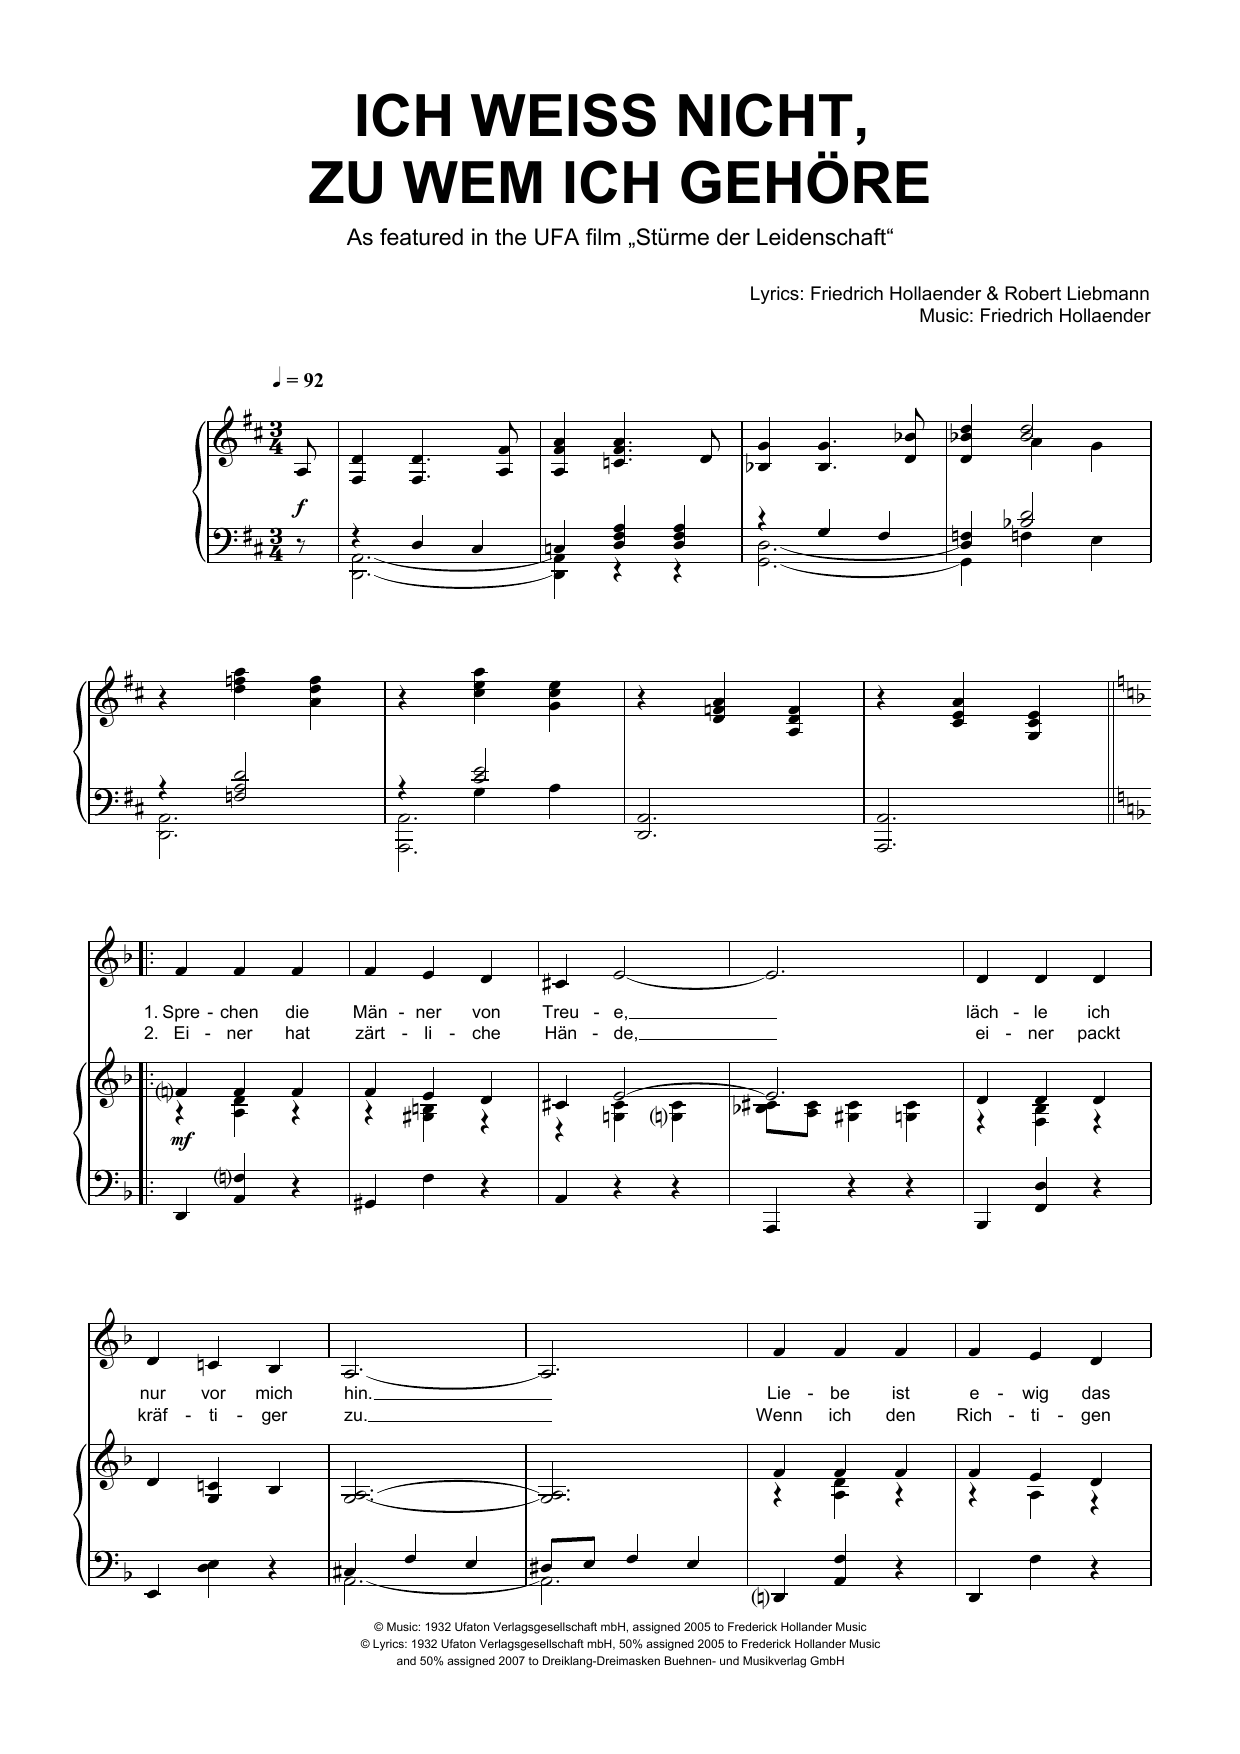 Download Friedrich Hollaender Ich Weiss Nicht, Zu Wem Ich Gehöre Sheet Music and learn how to play Piano & Vocal PDF digital score in minutes